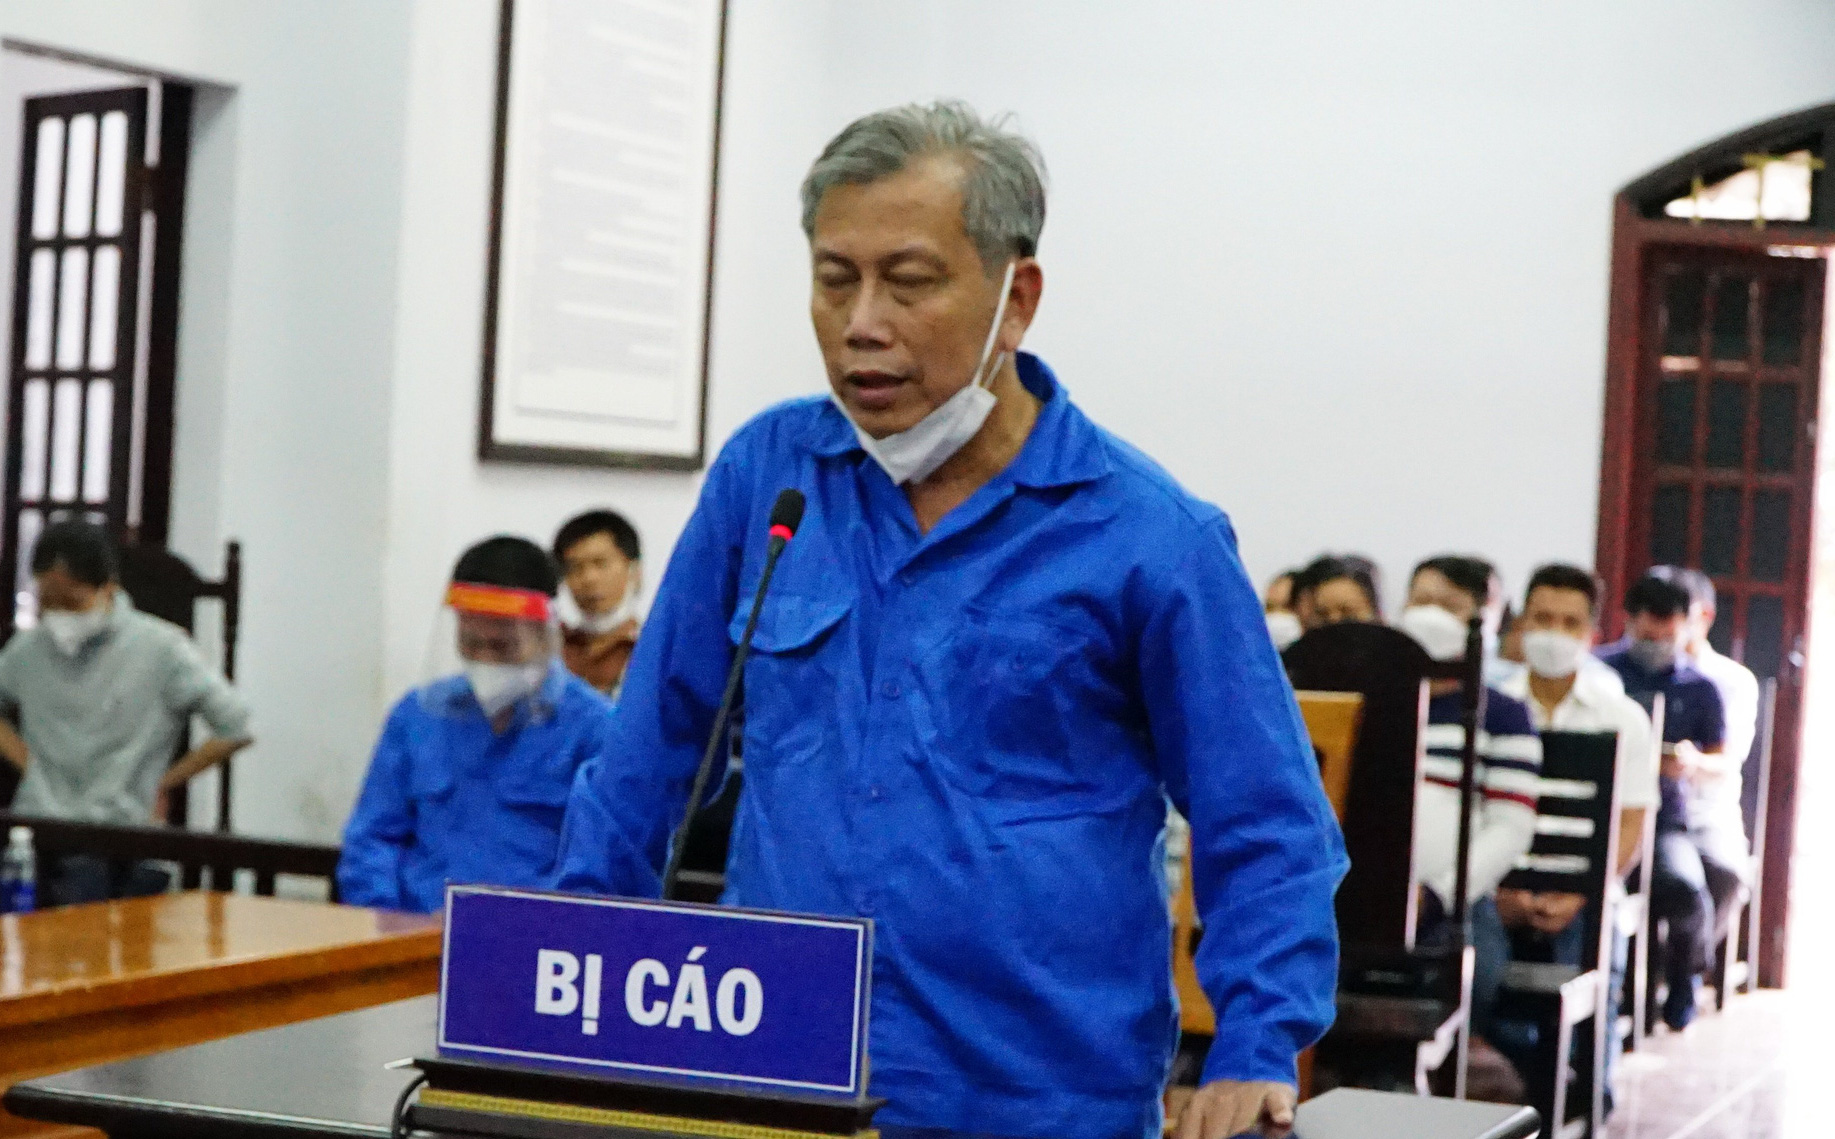 Bị cáo Trịnh Sướng xin HĐXX tuyên án thấp hơn đại diện VKS đề nghị